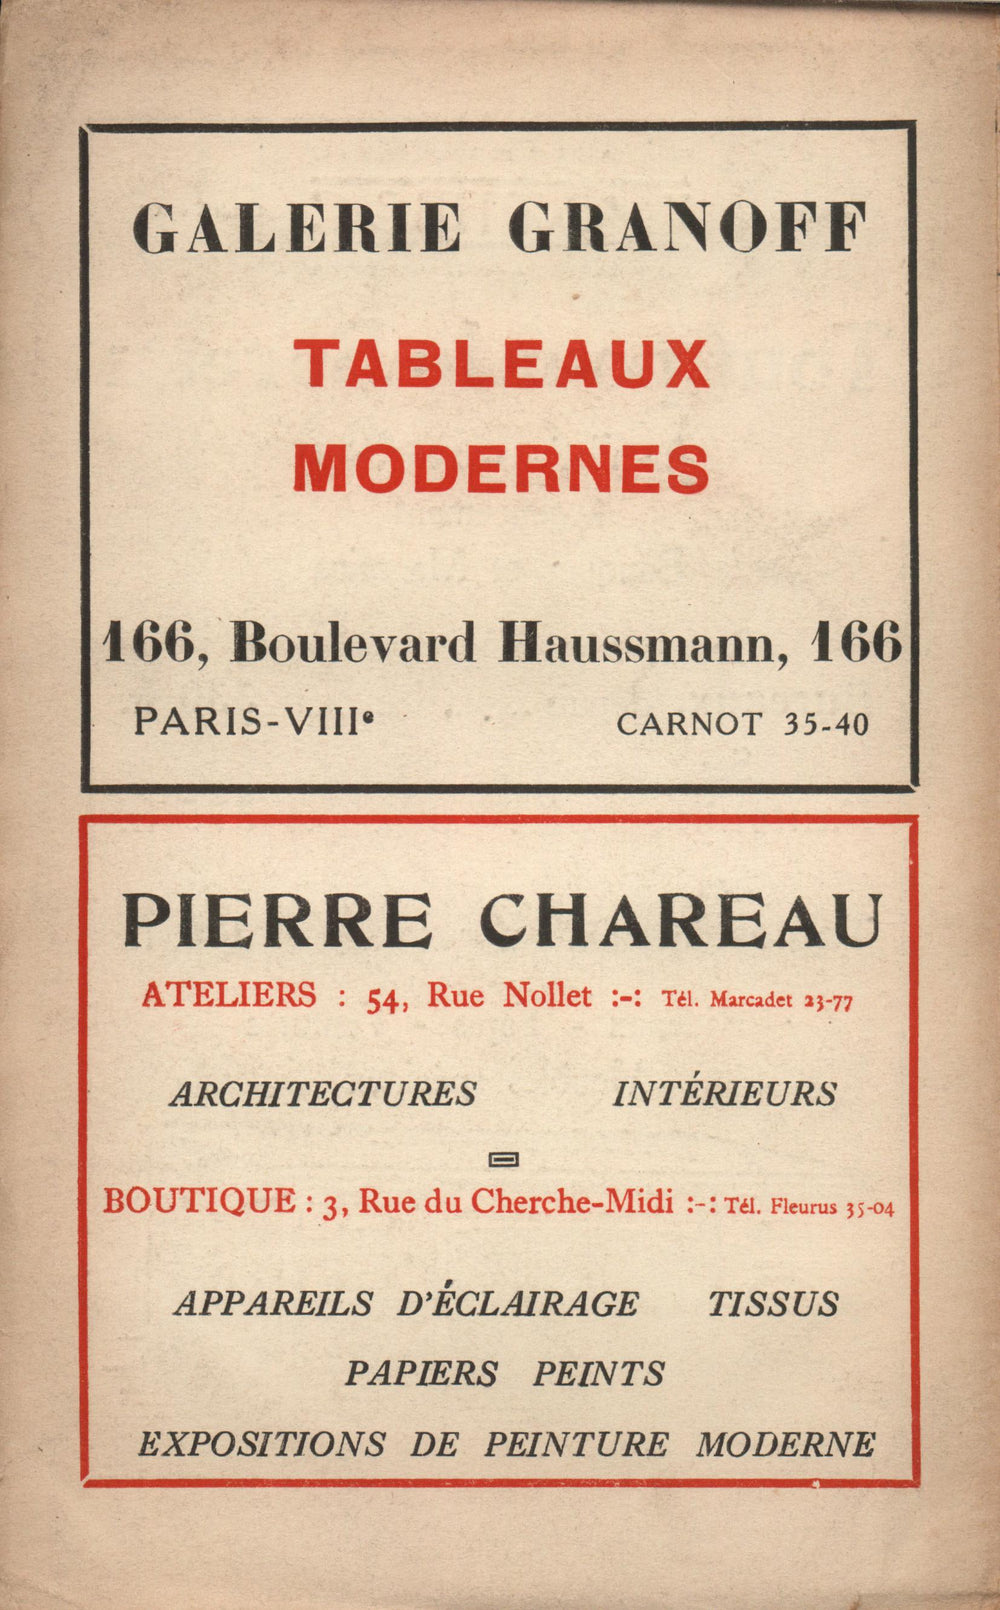 La Nouvelle Revue Française N' 152 (Mai 1926)